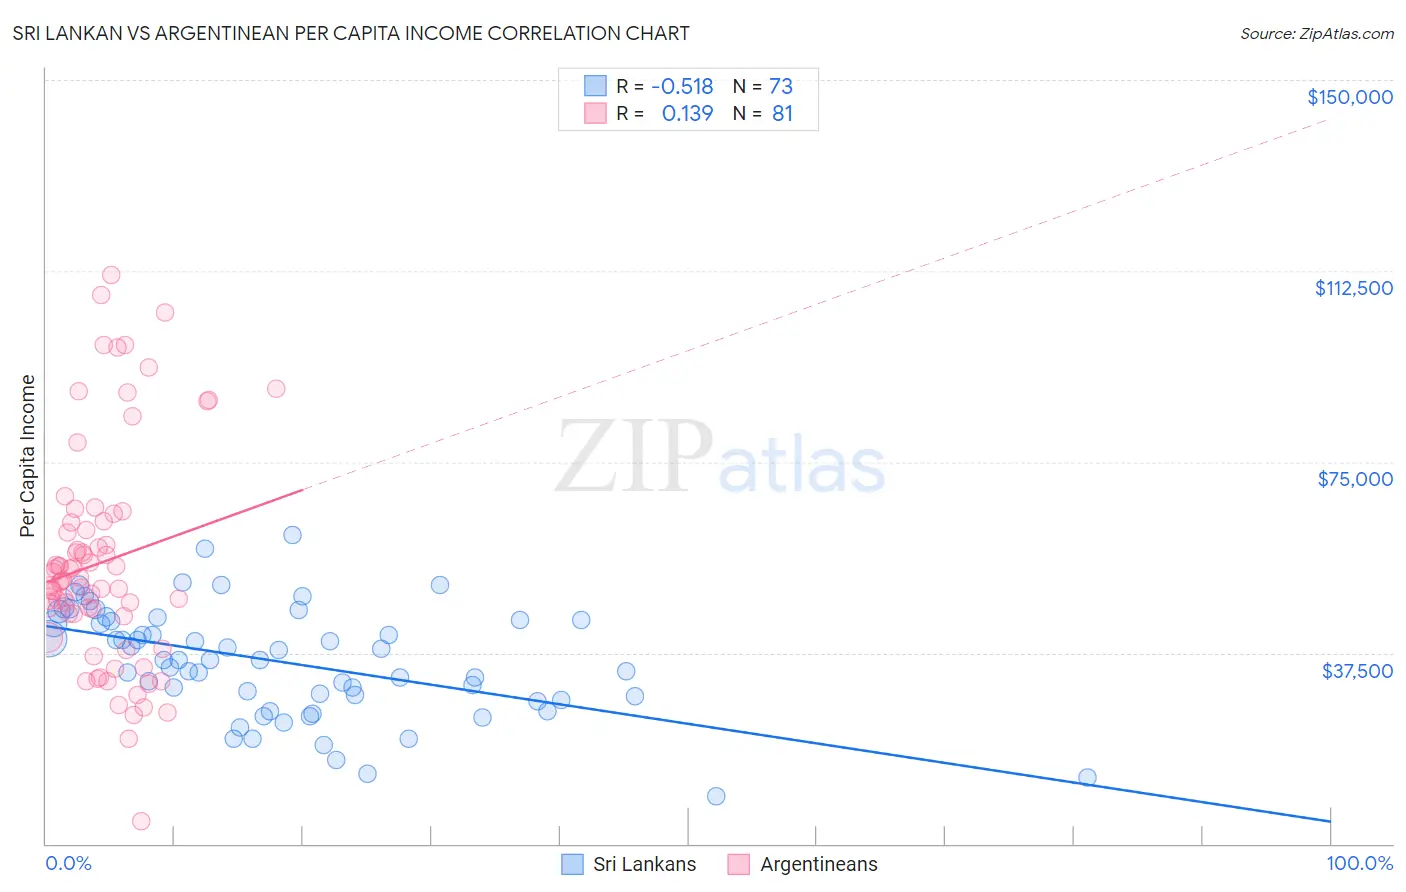 Sri Lankan vs Argentinean Per Capita Income